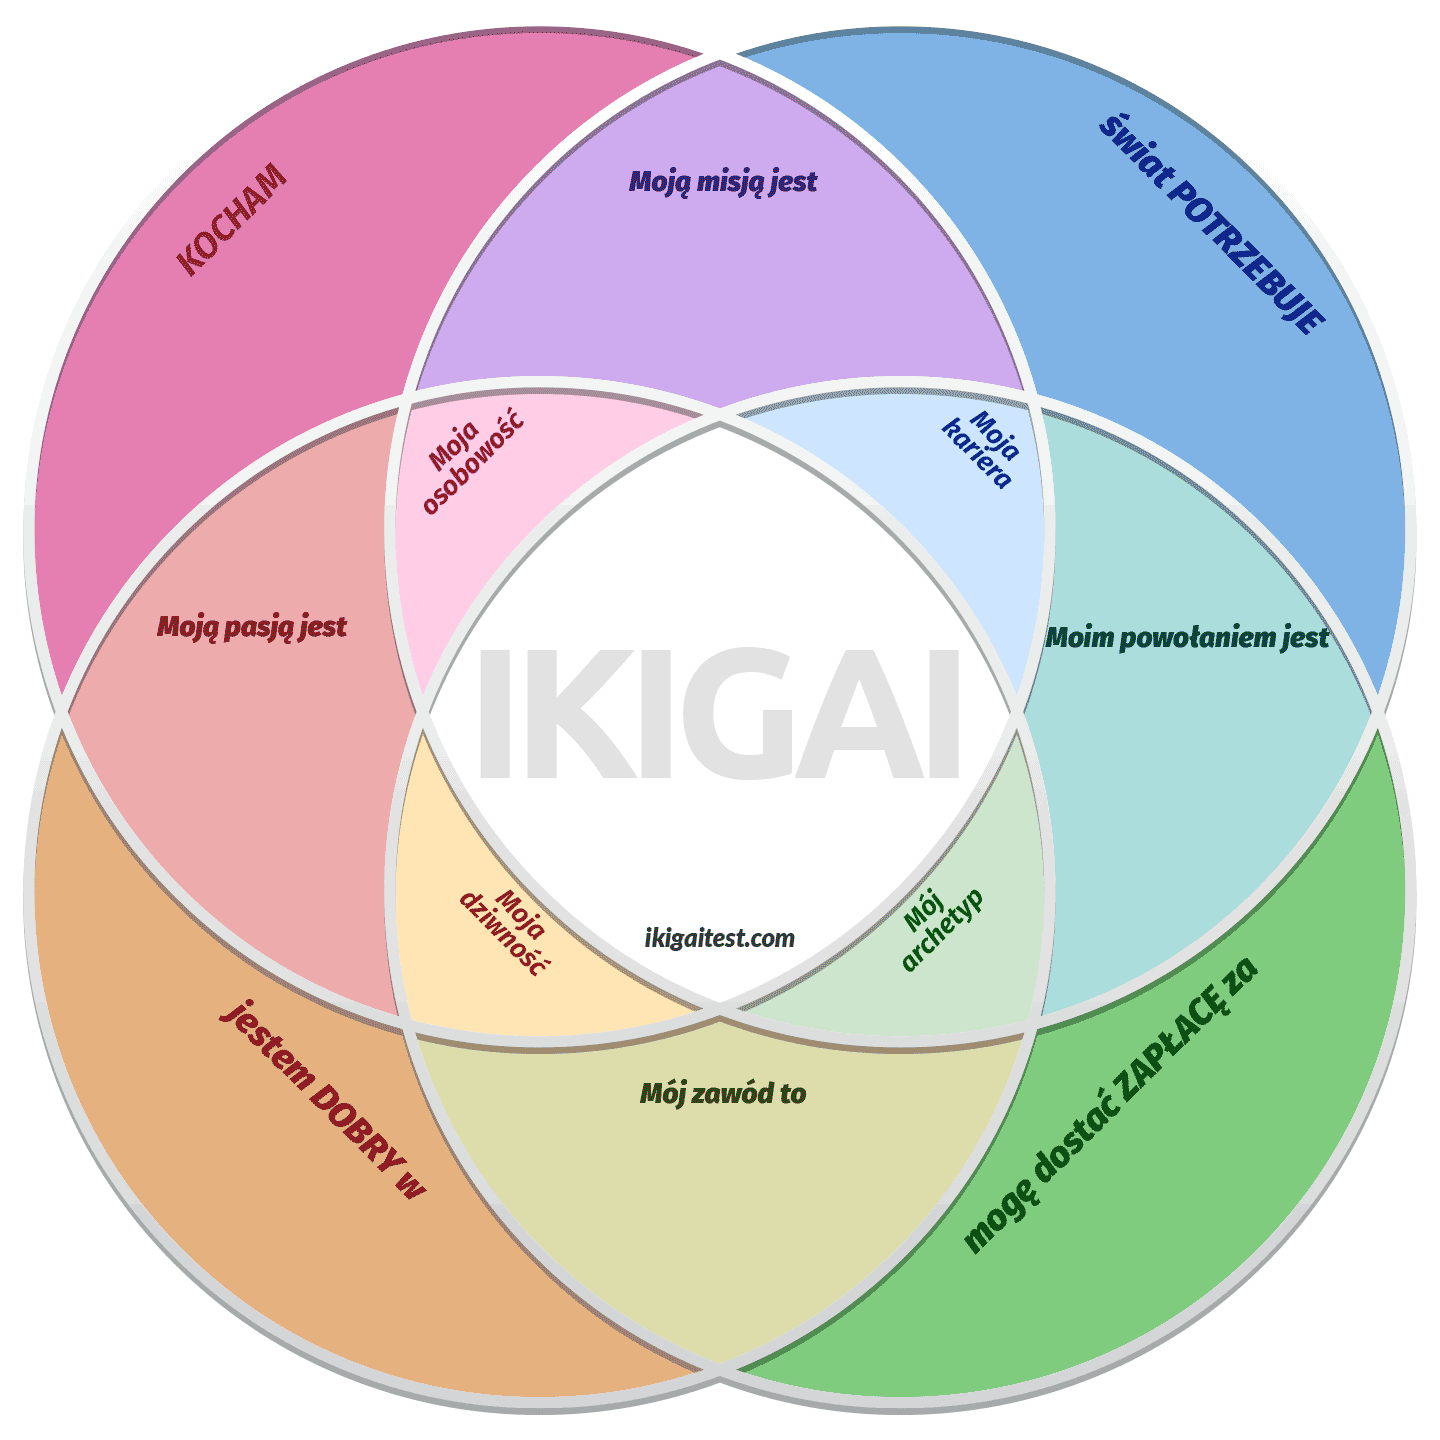 Szablon diagramu IKIGAI w języku polskim